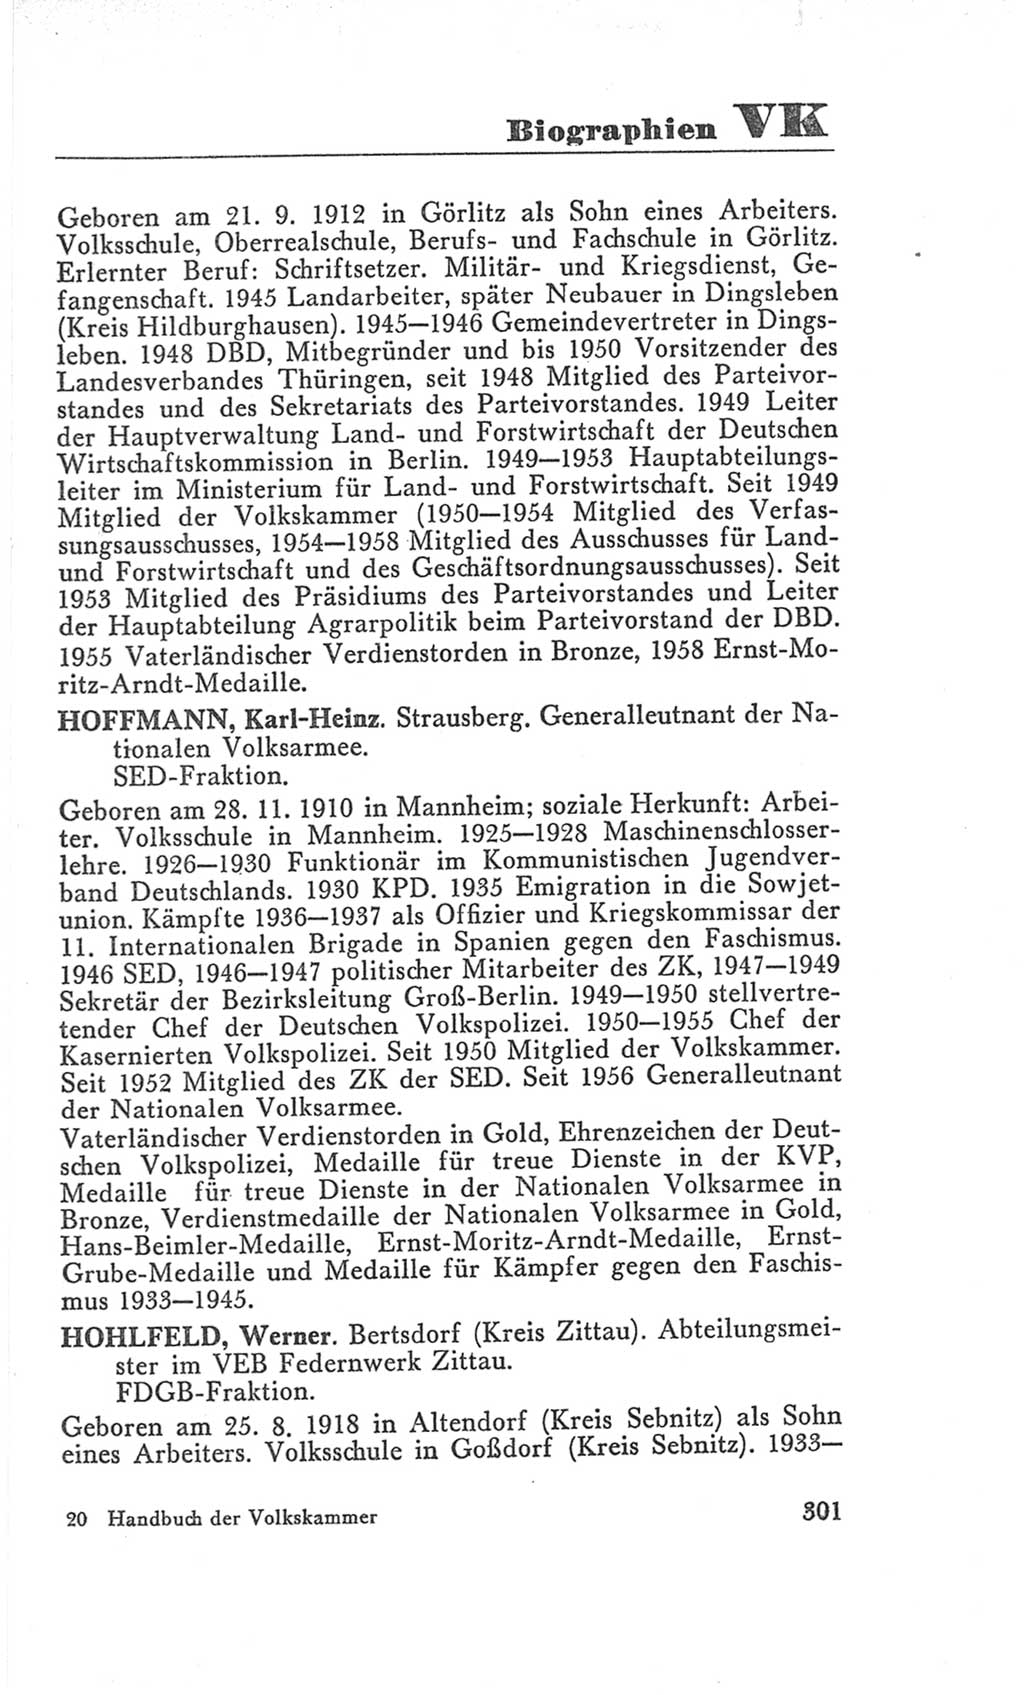 Handbuch der Volkskammer (VK) der Deutschen Demokratischen Republik (DDR), 3. Wahlperiode 1958-1963, Seite 301 (Hdb. VK. DDR 3. WP. 1958-1963, S. 301)